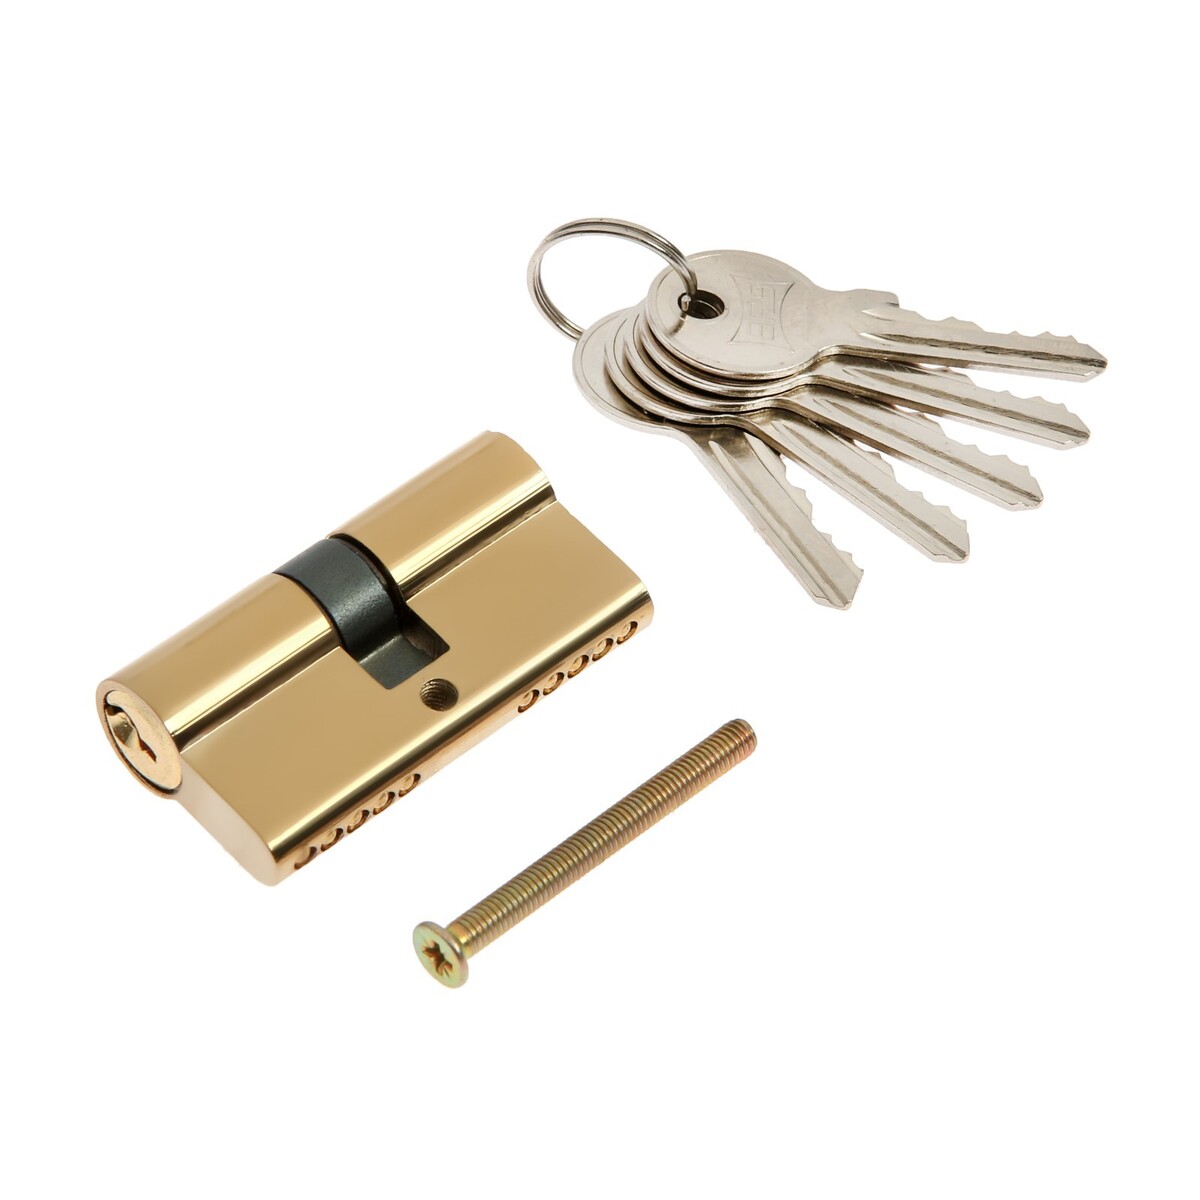 Цилиндровый механизм, 60 мм, английский ключ, 5 ключей, цвет золото замок врезной омега зв7 01 00 00000595 ручка в комплекте цилиндровый медный